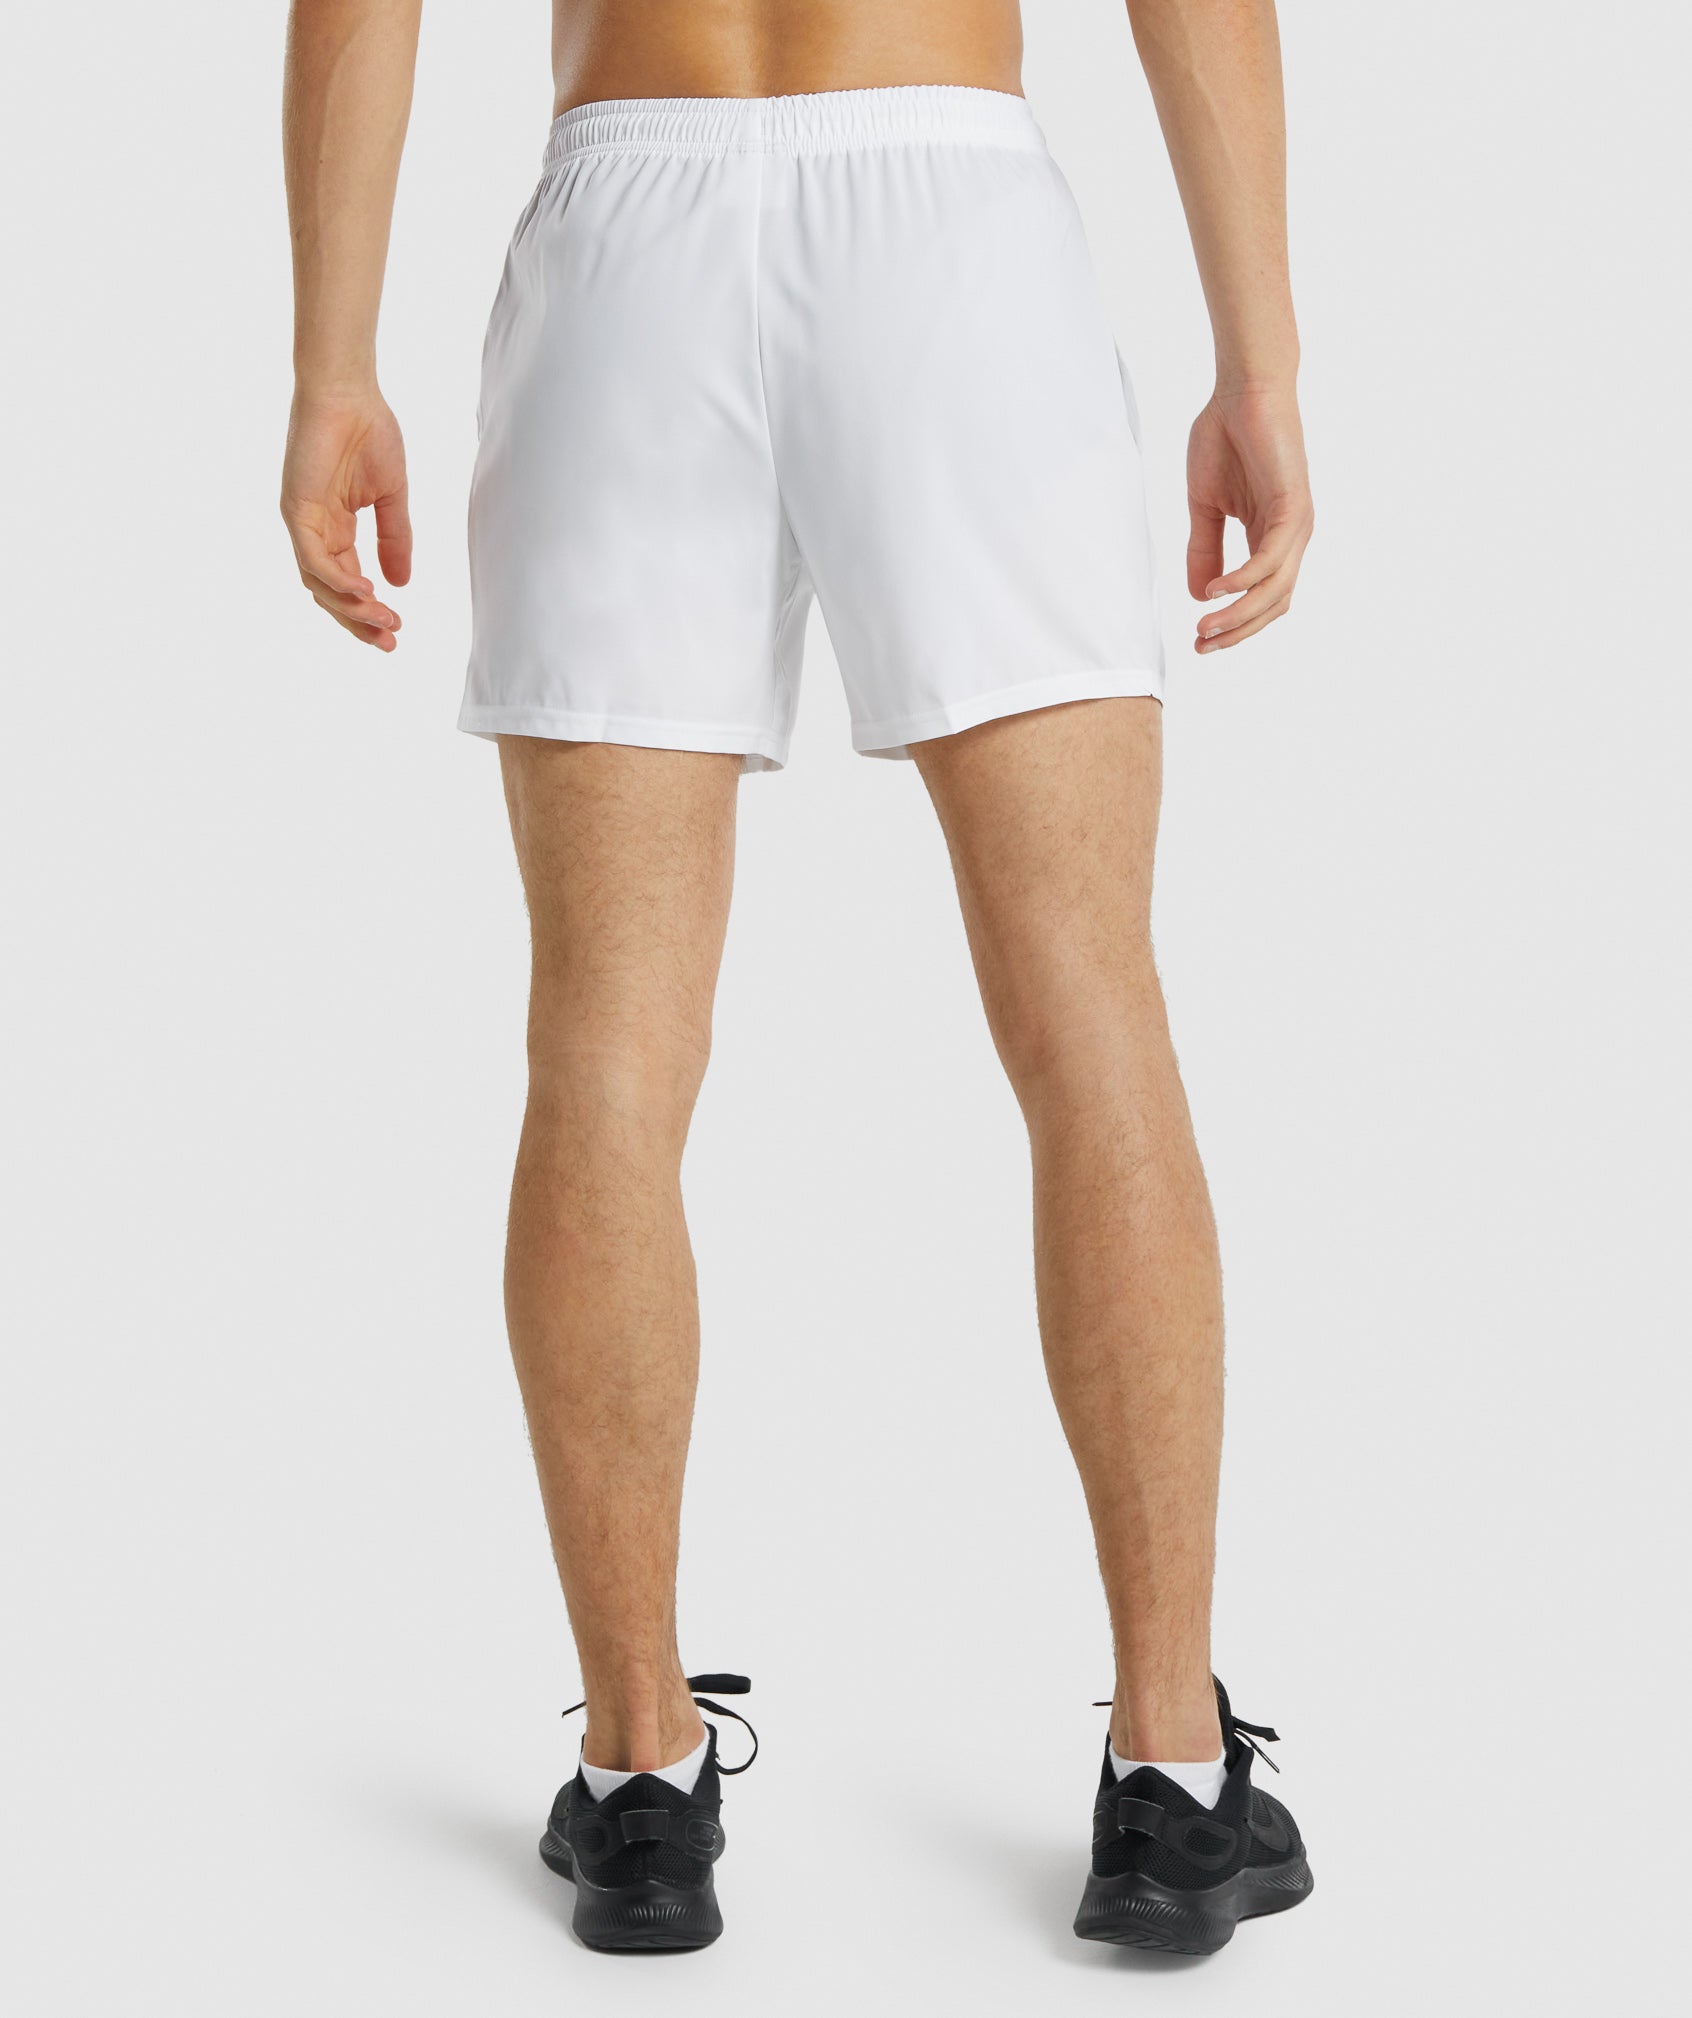 Pantalones cortos deportivos para gimnasio para hombre Pantalones cortos de  gimnasio para hombre con cintura elástica de 5,5 pulgadas Adepaton  BST3006984-5